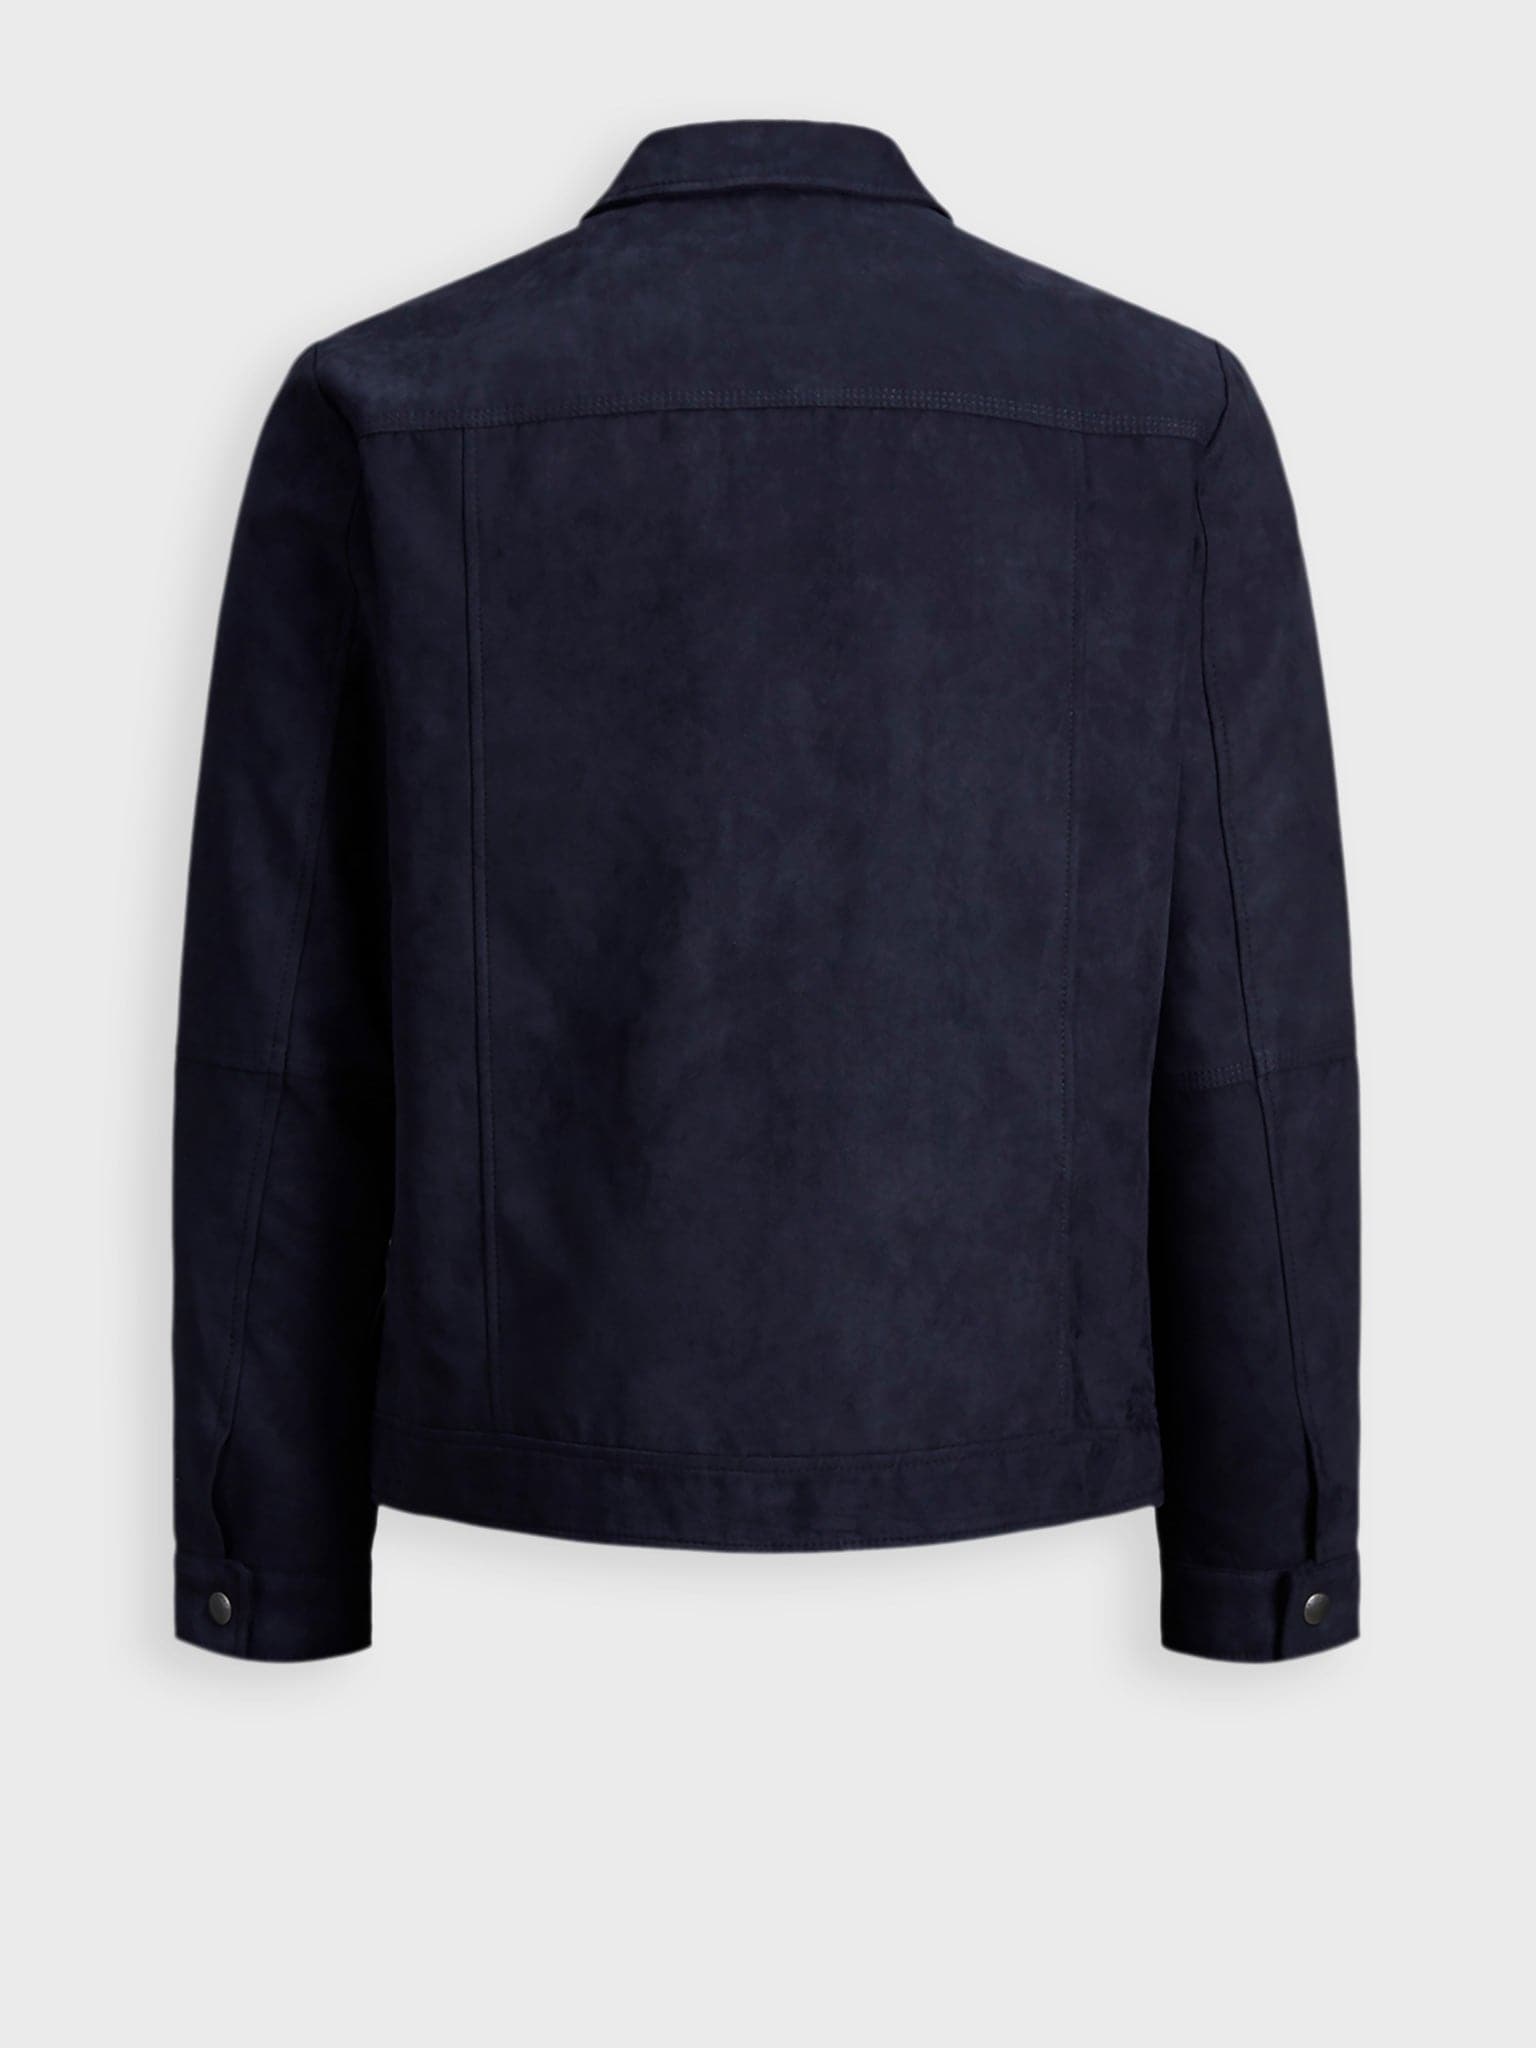 Ανδρικό jacket μουτόν με τσέπες | 12142597